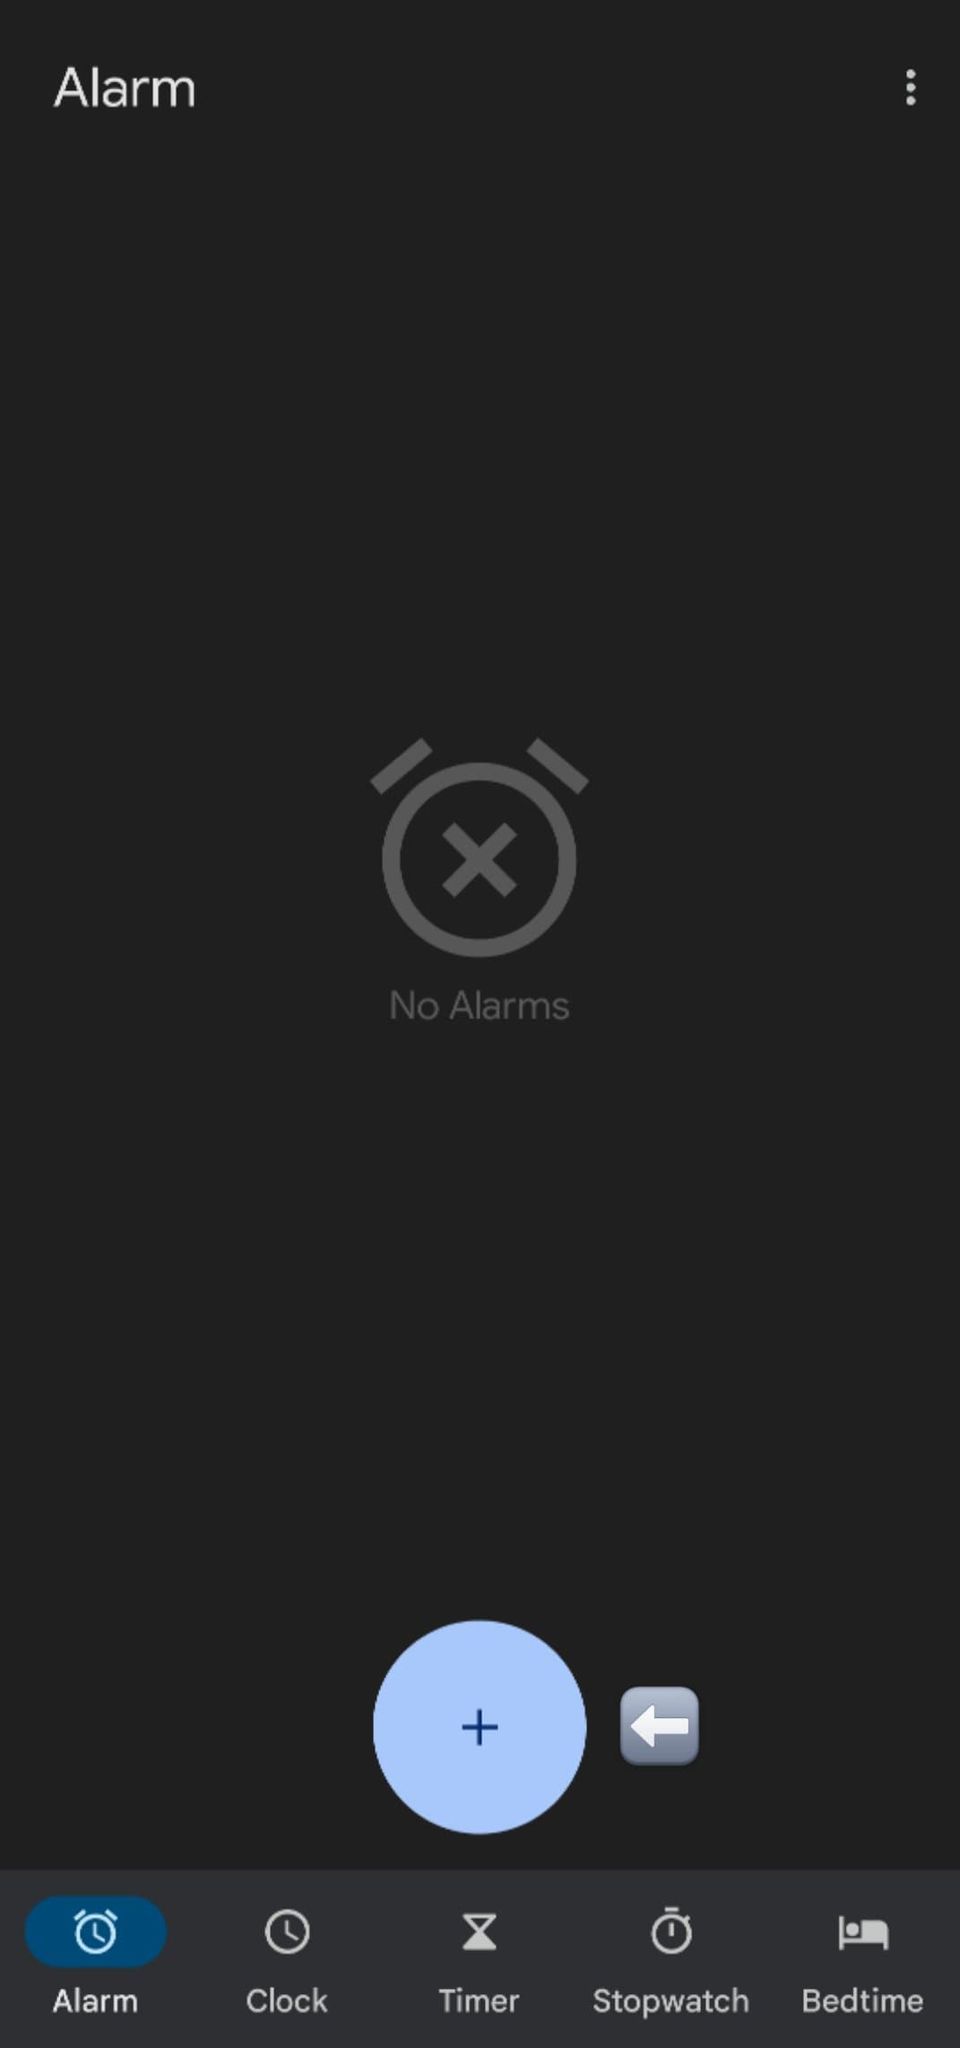 Captura de tela do botão + para adicionar alarme no relógio.